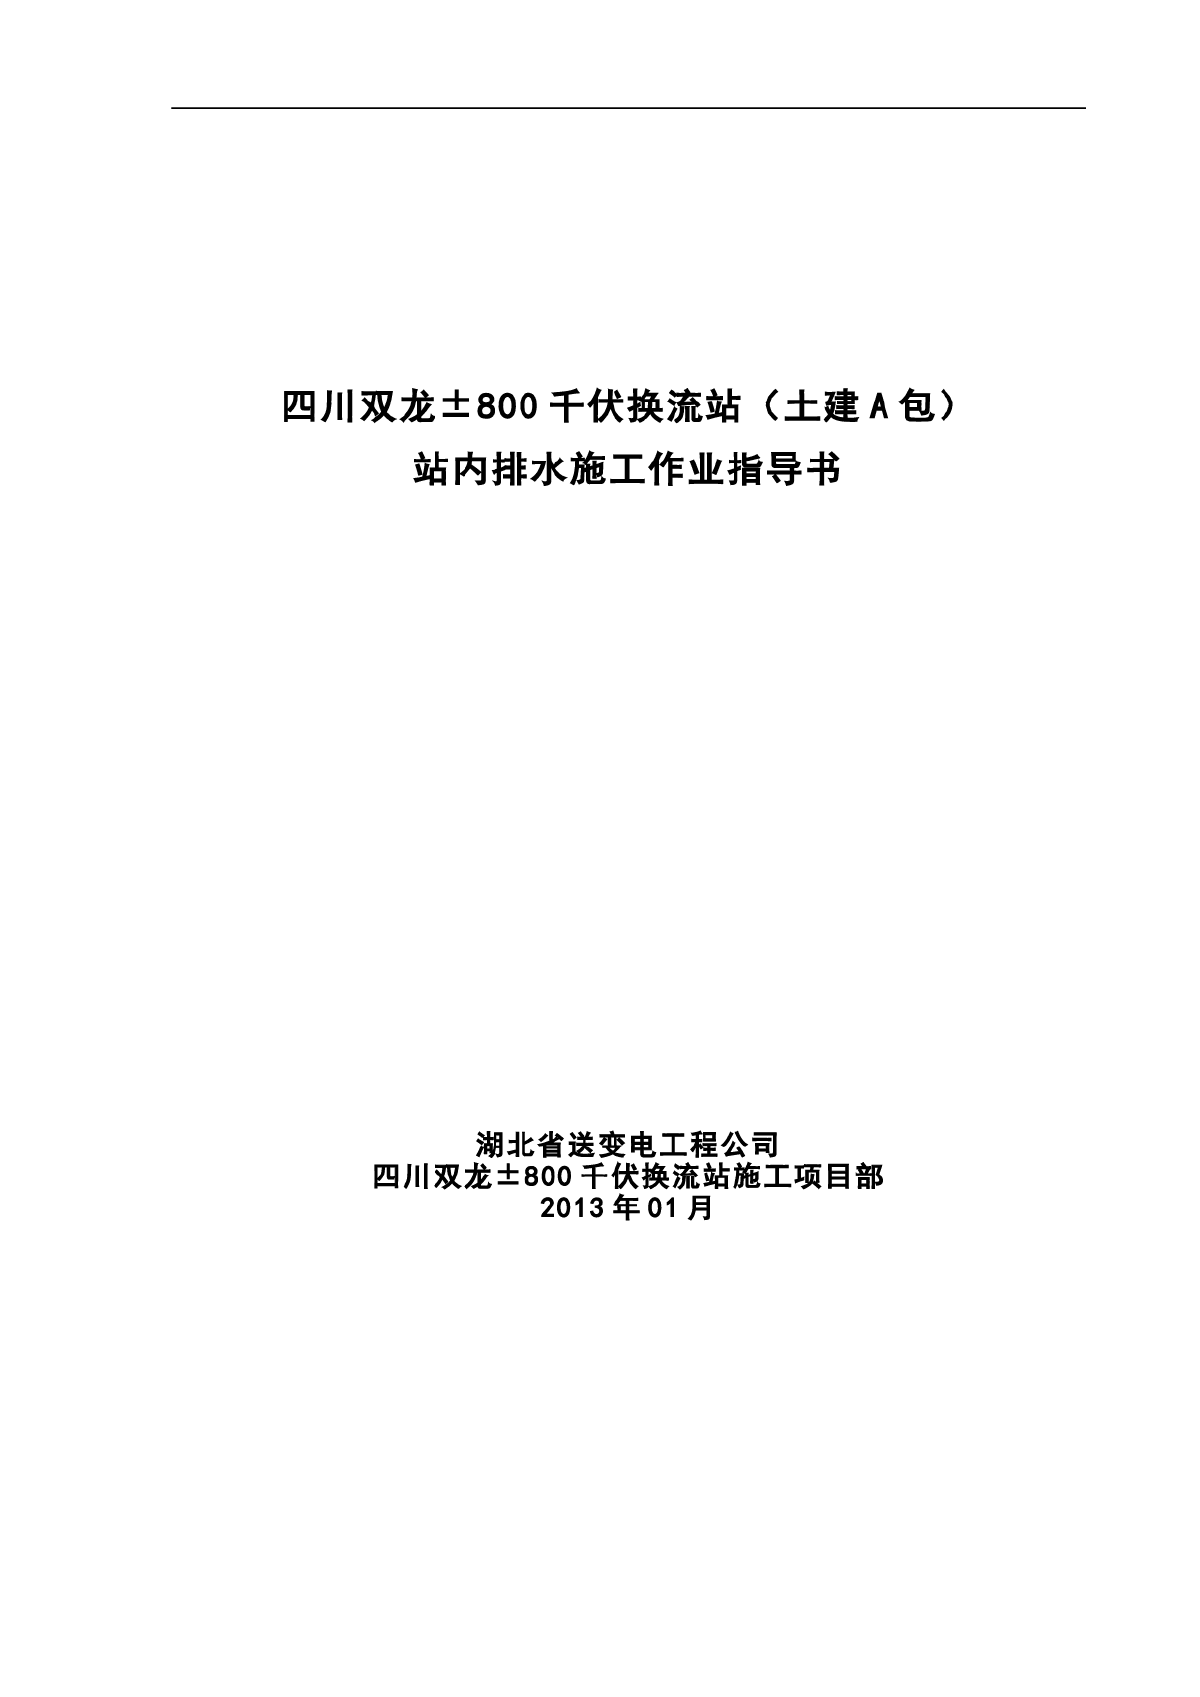 【四川】站内排水作业指导书